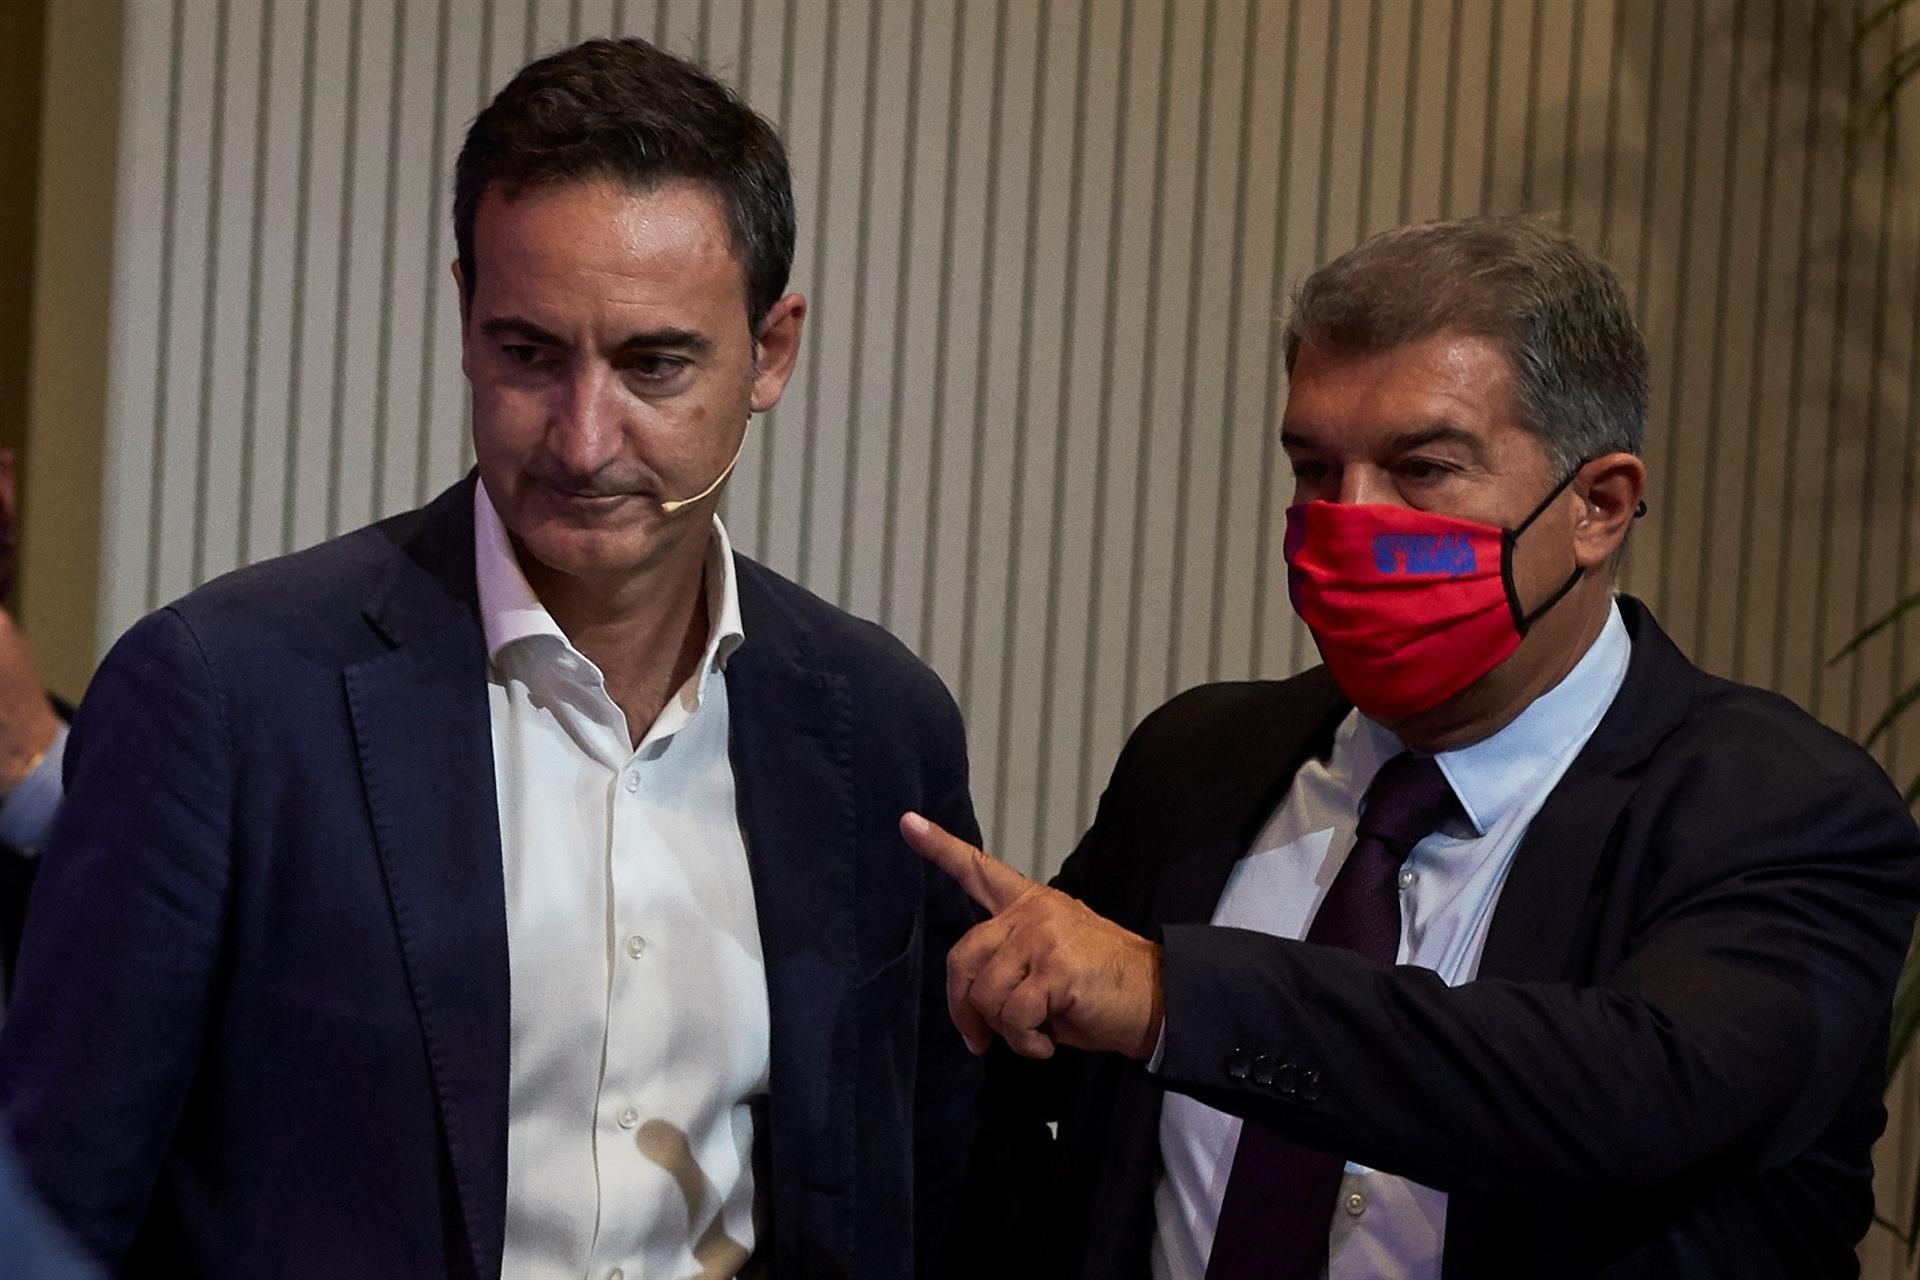 El Barça confirma les "irregularitats" de Bartomeu, però ajorna possibles accions judicials